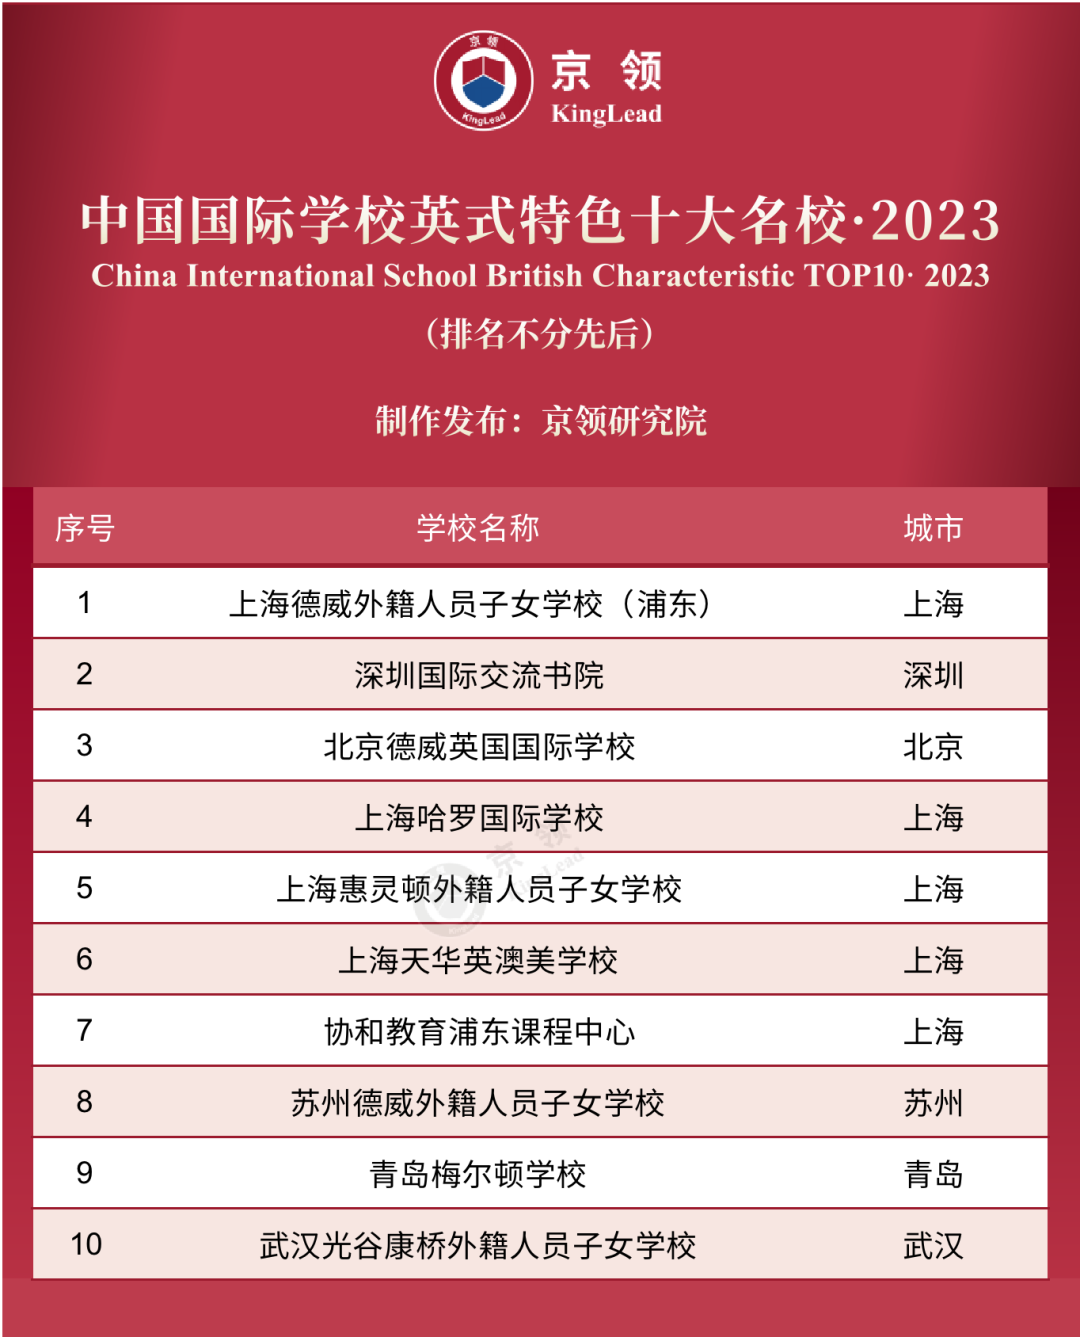 京领2023中国国际学校特色榜发布 英美方向国际学校哪家强  数据 第8张